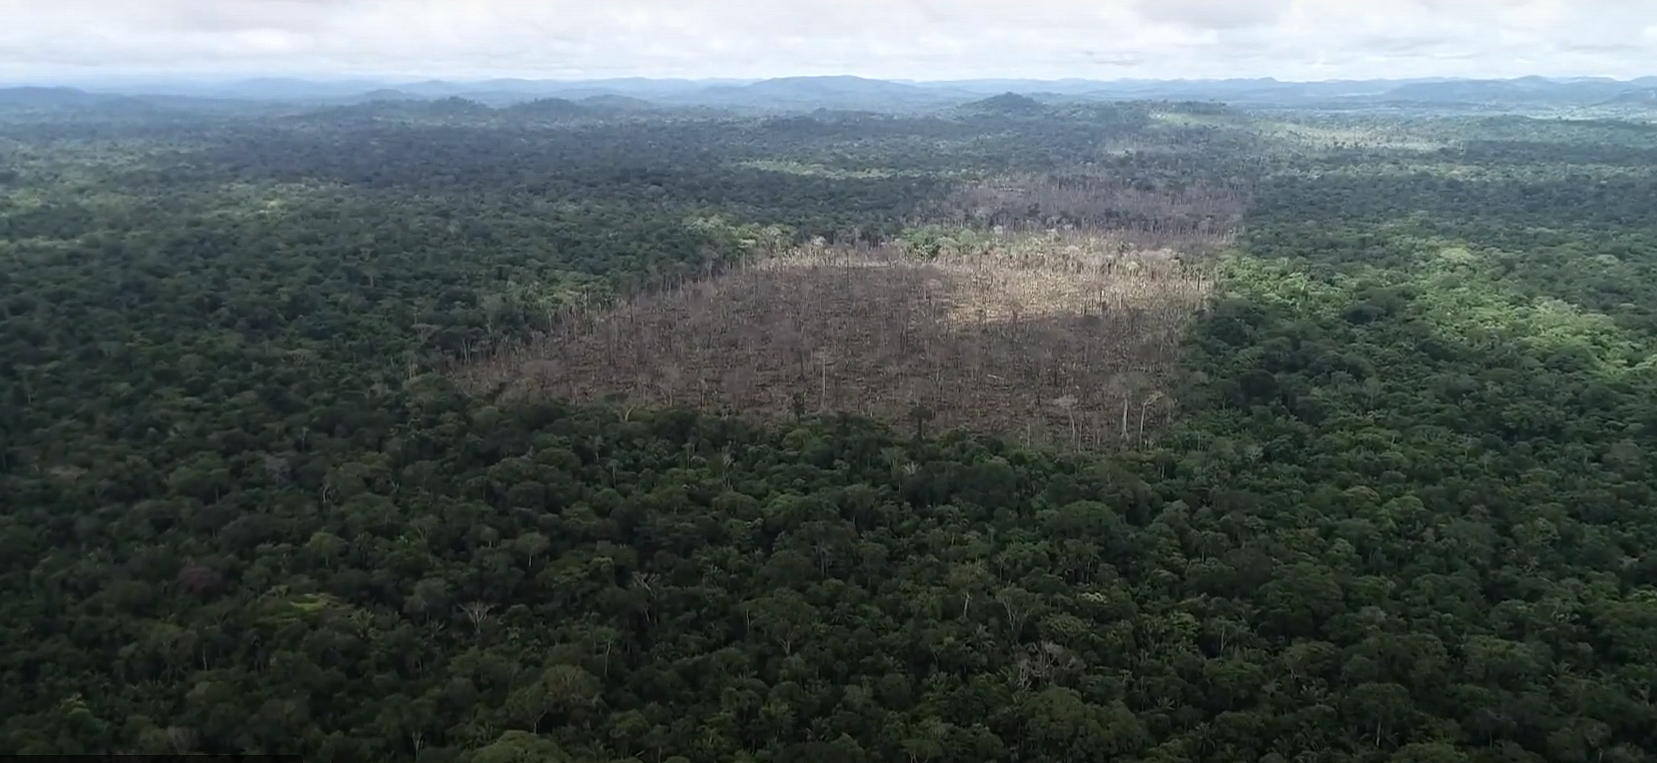 Исследование: крупнейшие модные бренды рискуют навредить лесам Амазонии